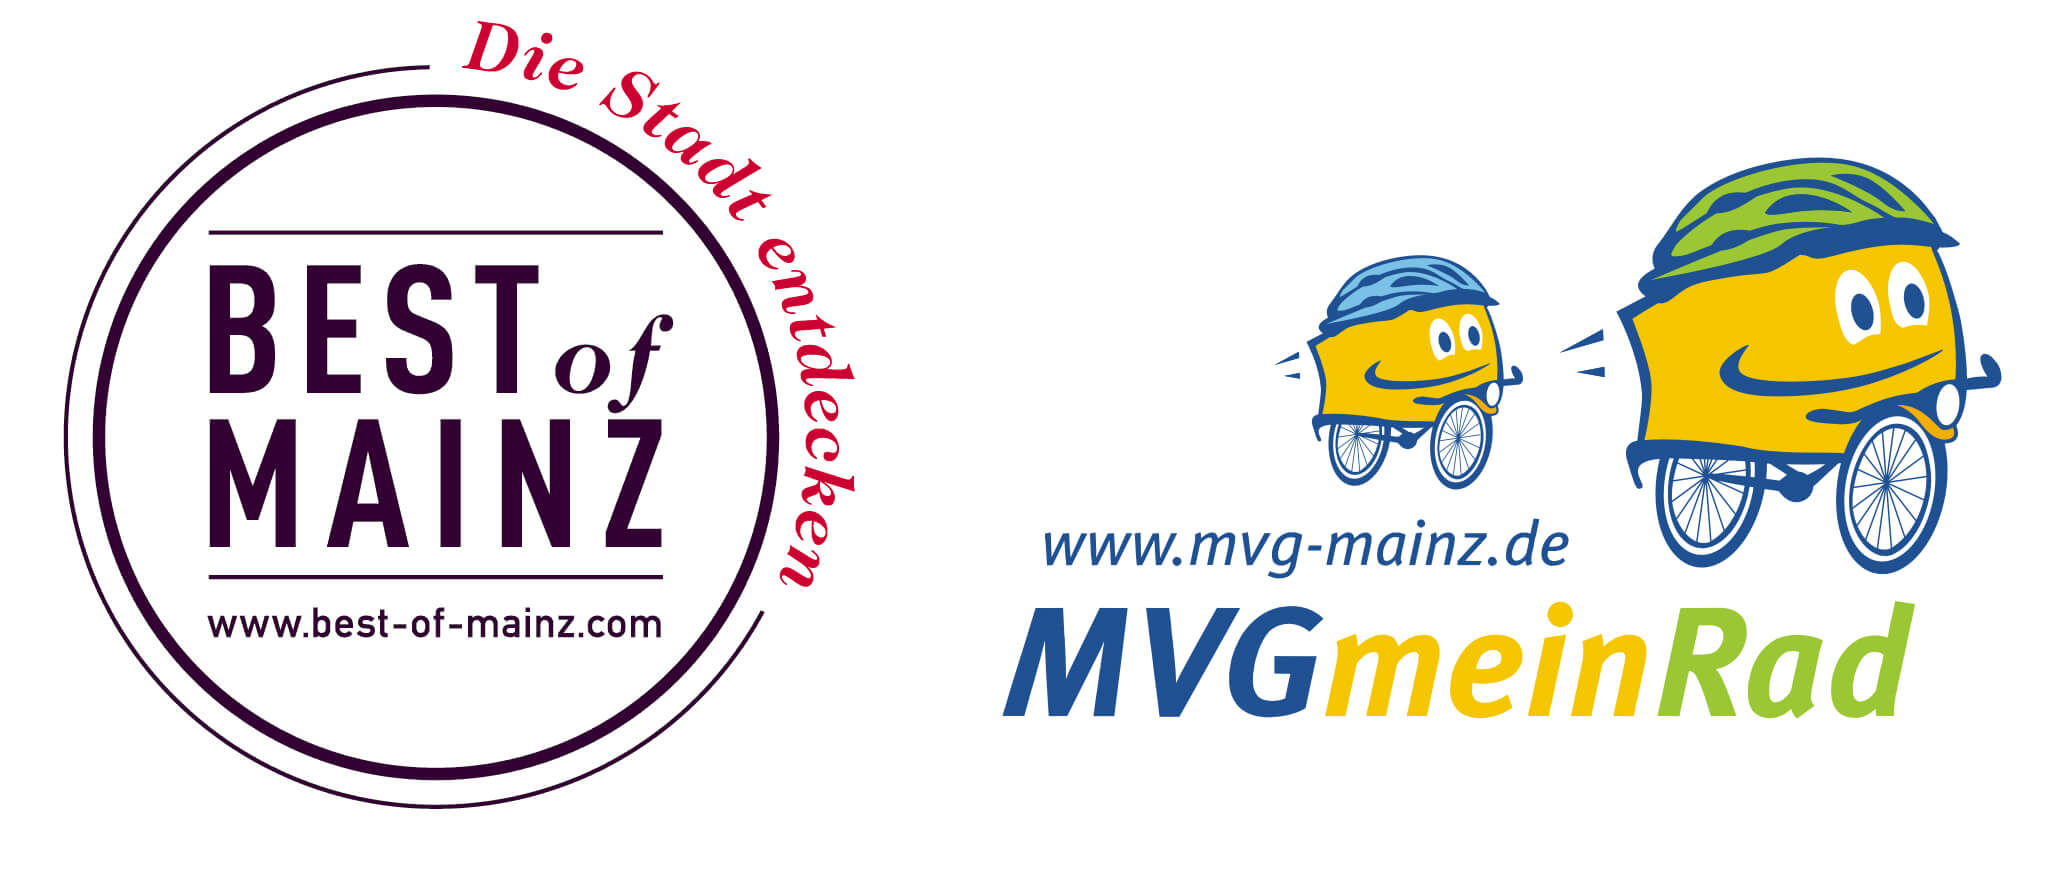 Best-of-Mainz+MVGmeinRad